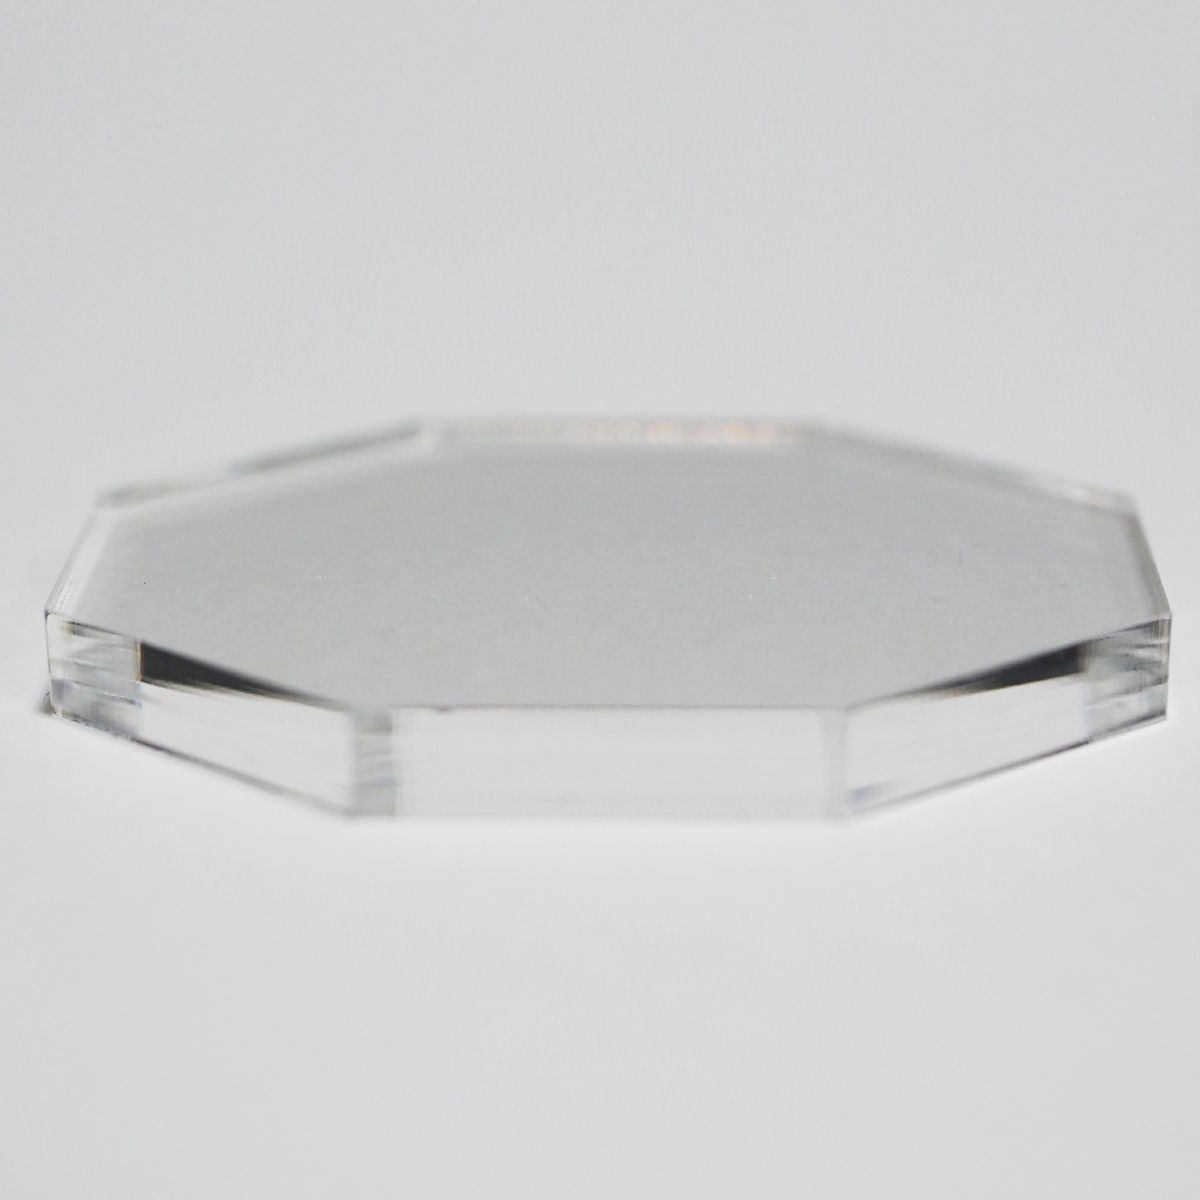 透明 アクリル 5mm厚 正八角形 5cmサイズ 4個セット - メルカリ